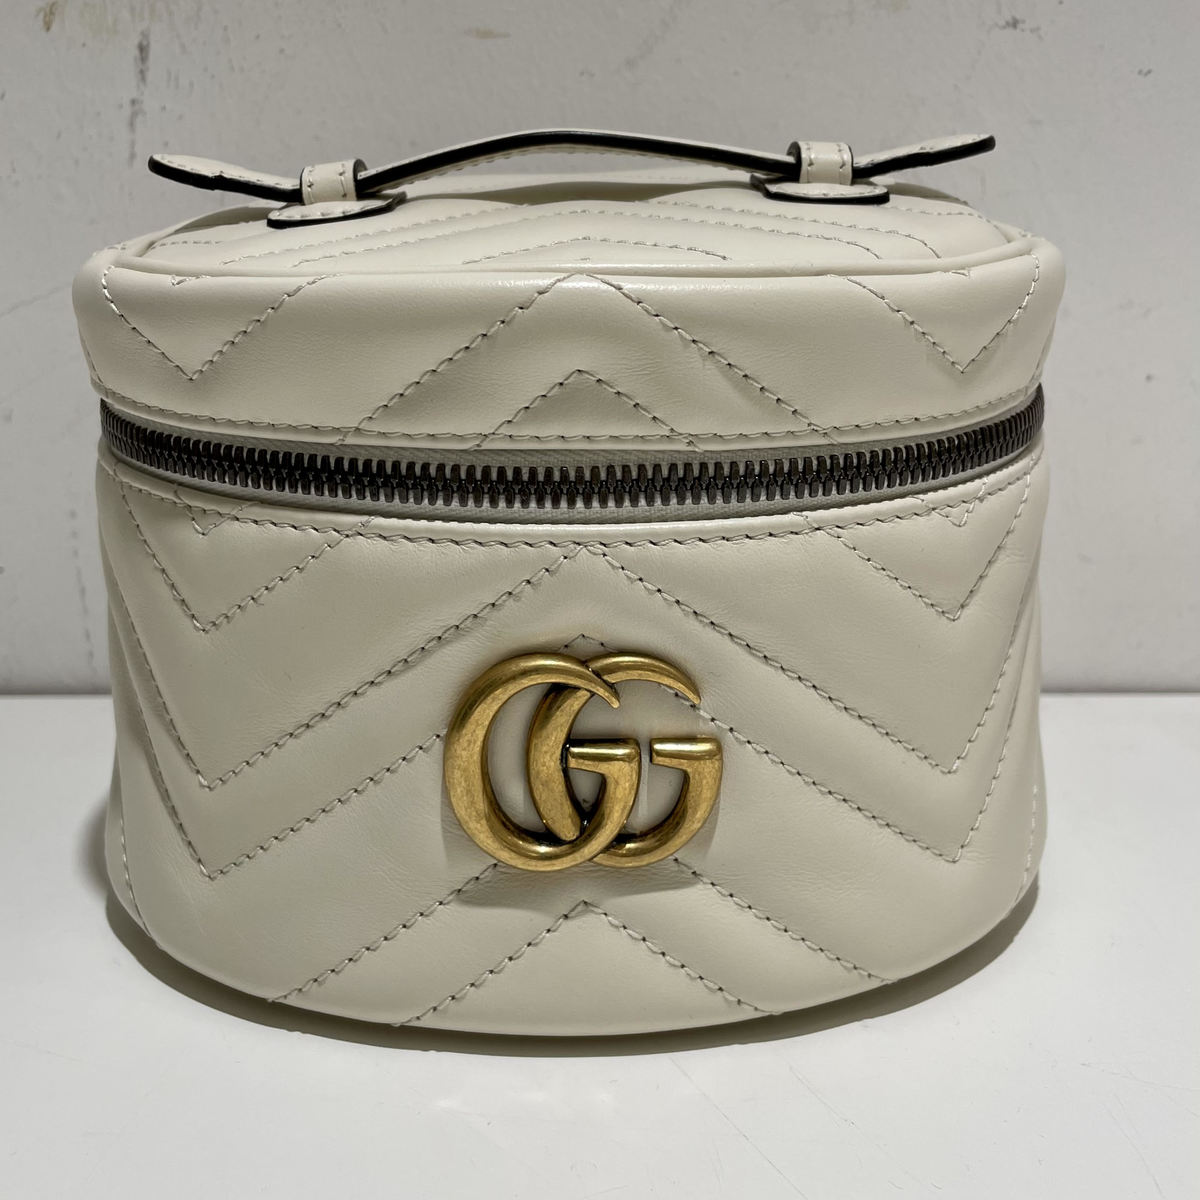 グッチのホワイト 624615 海外限定 GGマーモント コスメティックバッグの買取実績です。